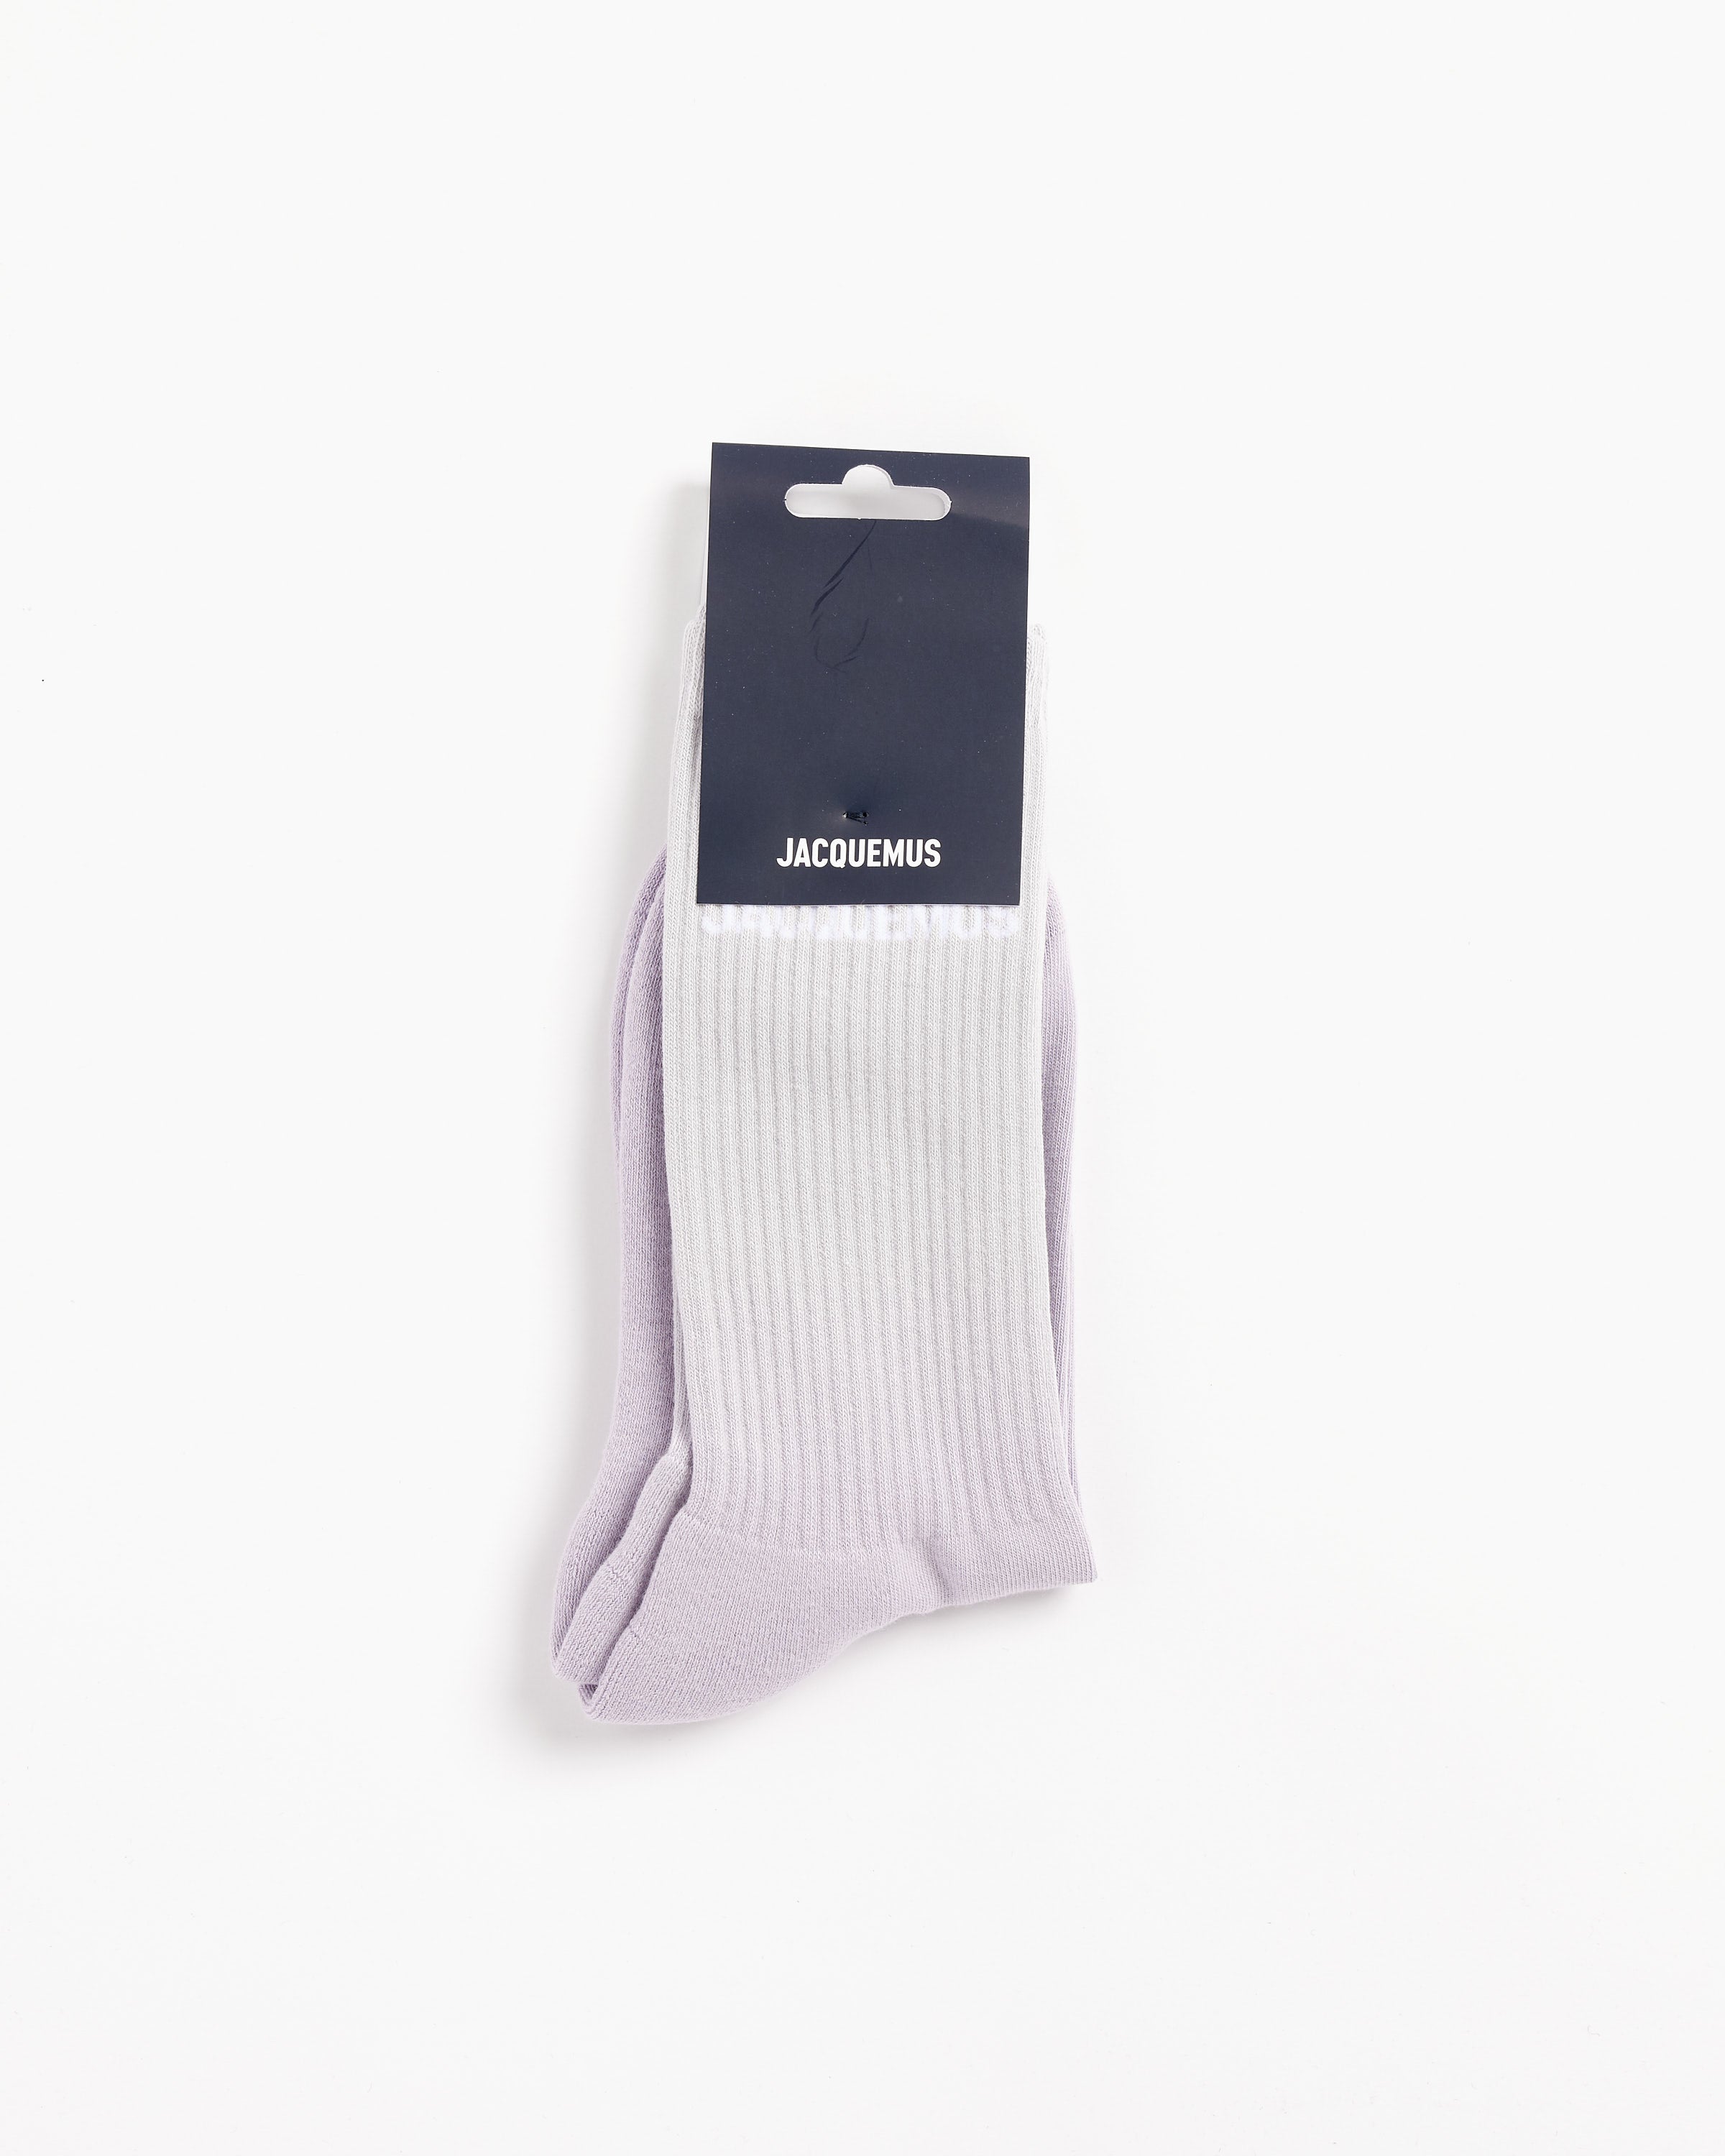 Jacquemus Les Chaussettes J Socks